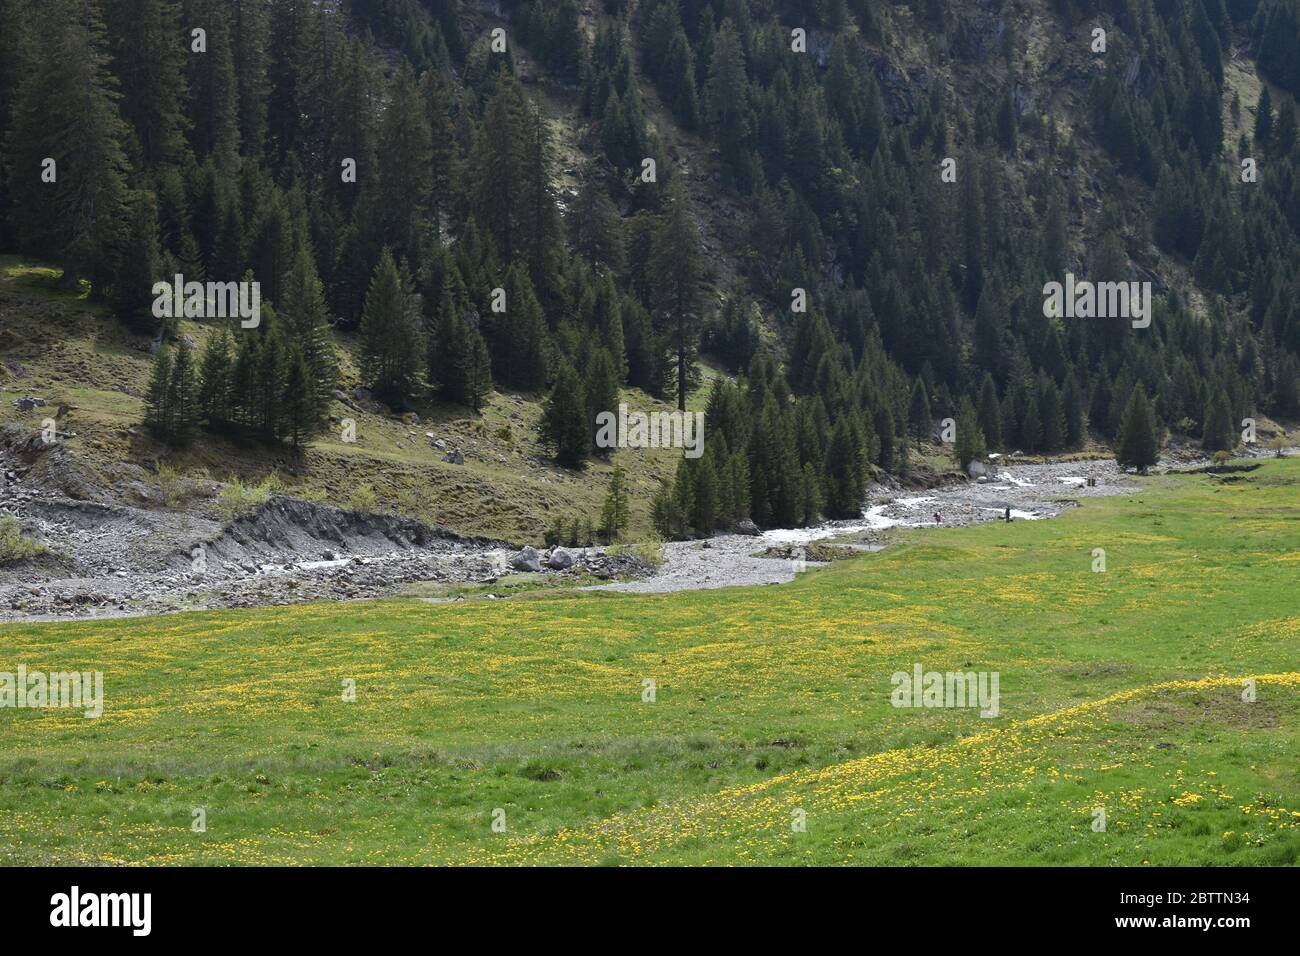 Natural scenery in Glarus Switzerland Stock Photo